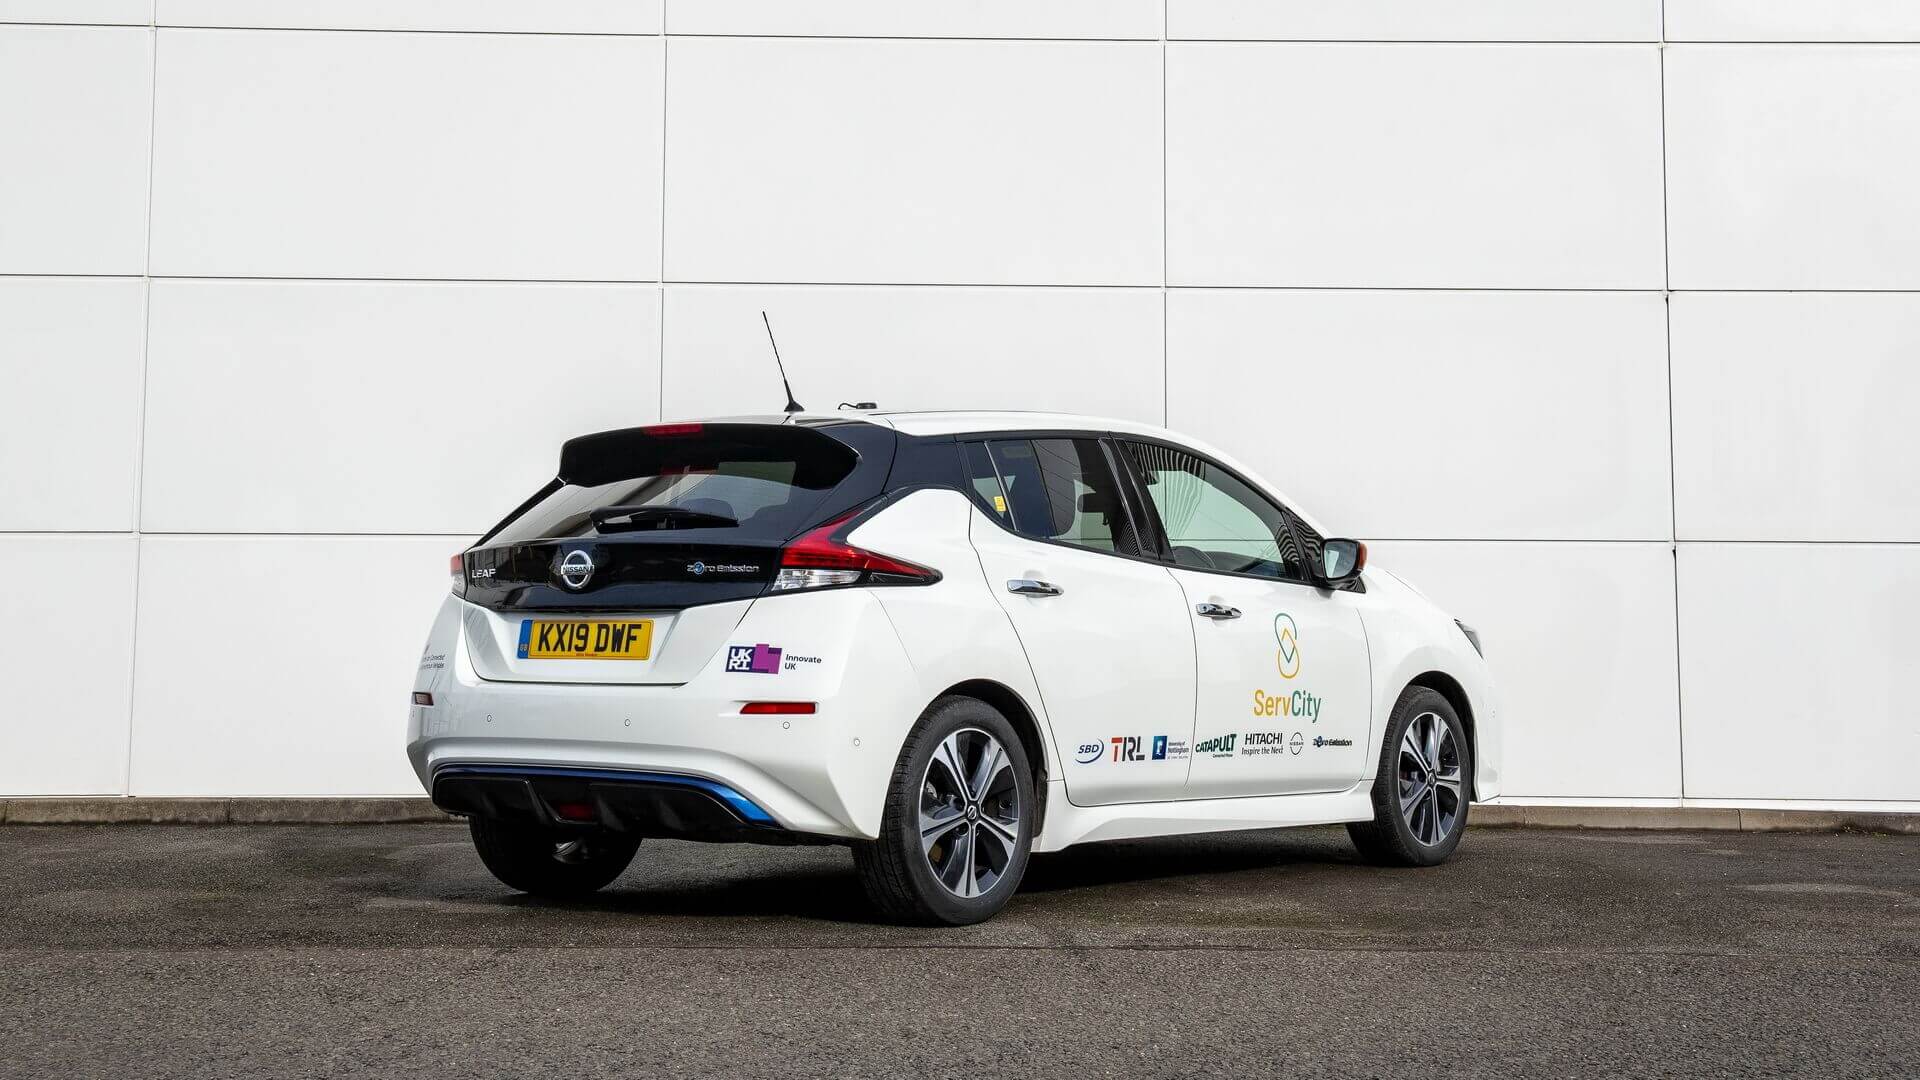 Nissan объединился с пятью партнерами для разработки нового исследовательского проекта автономной мобильности в Великобритании